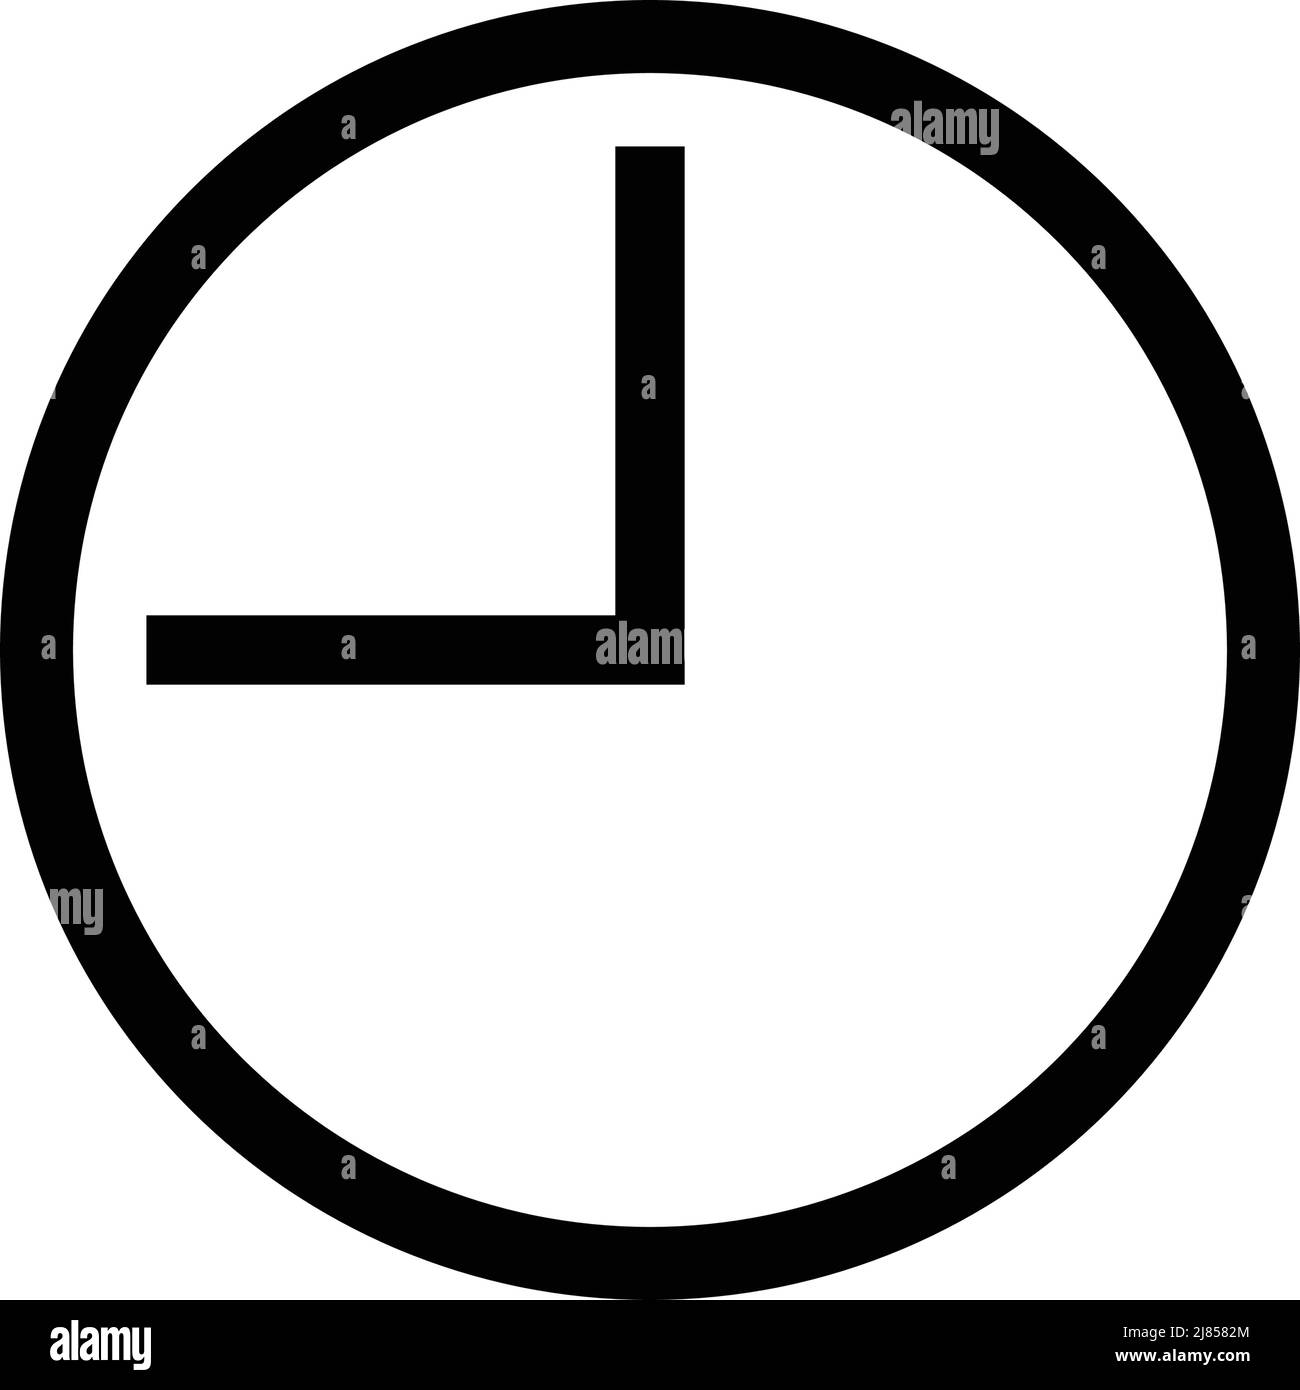 A simple clock icon. Timer. Editable vector. Stock Vector